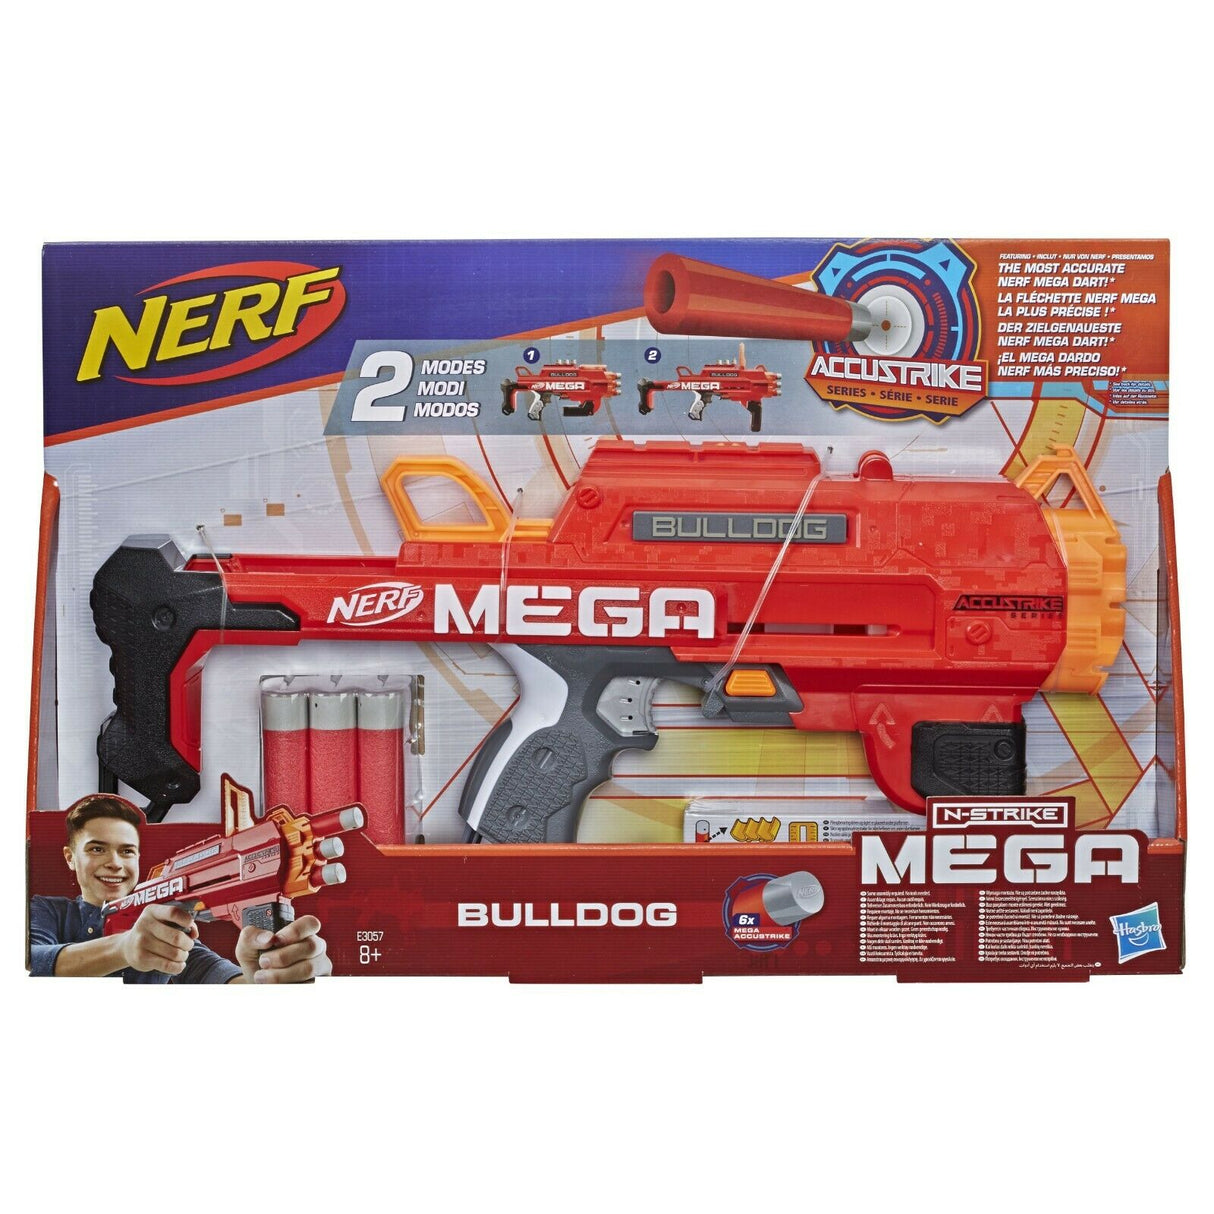 Nerf Gun N-Strike Mega Bulldog Blaster